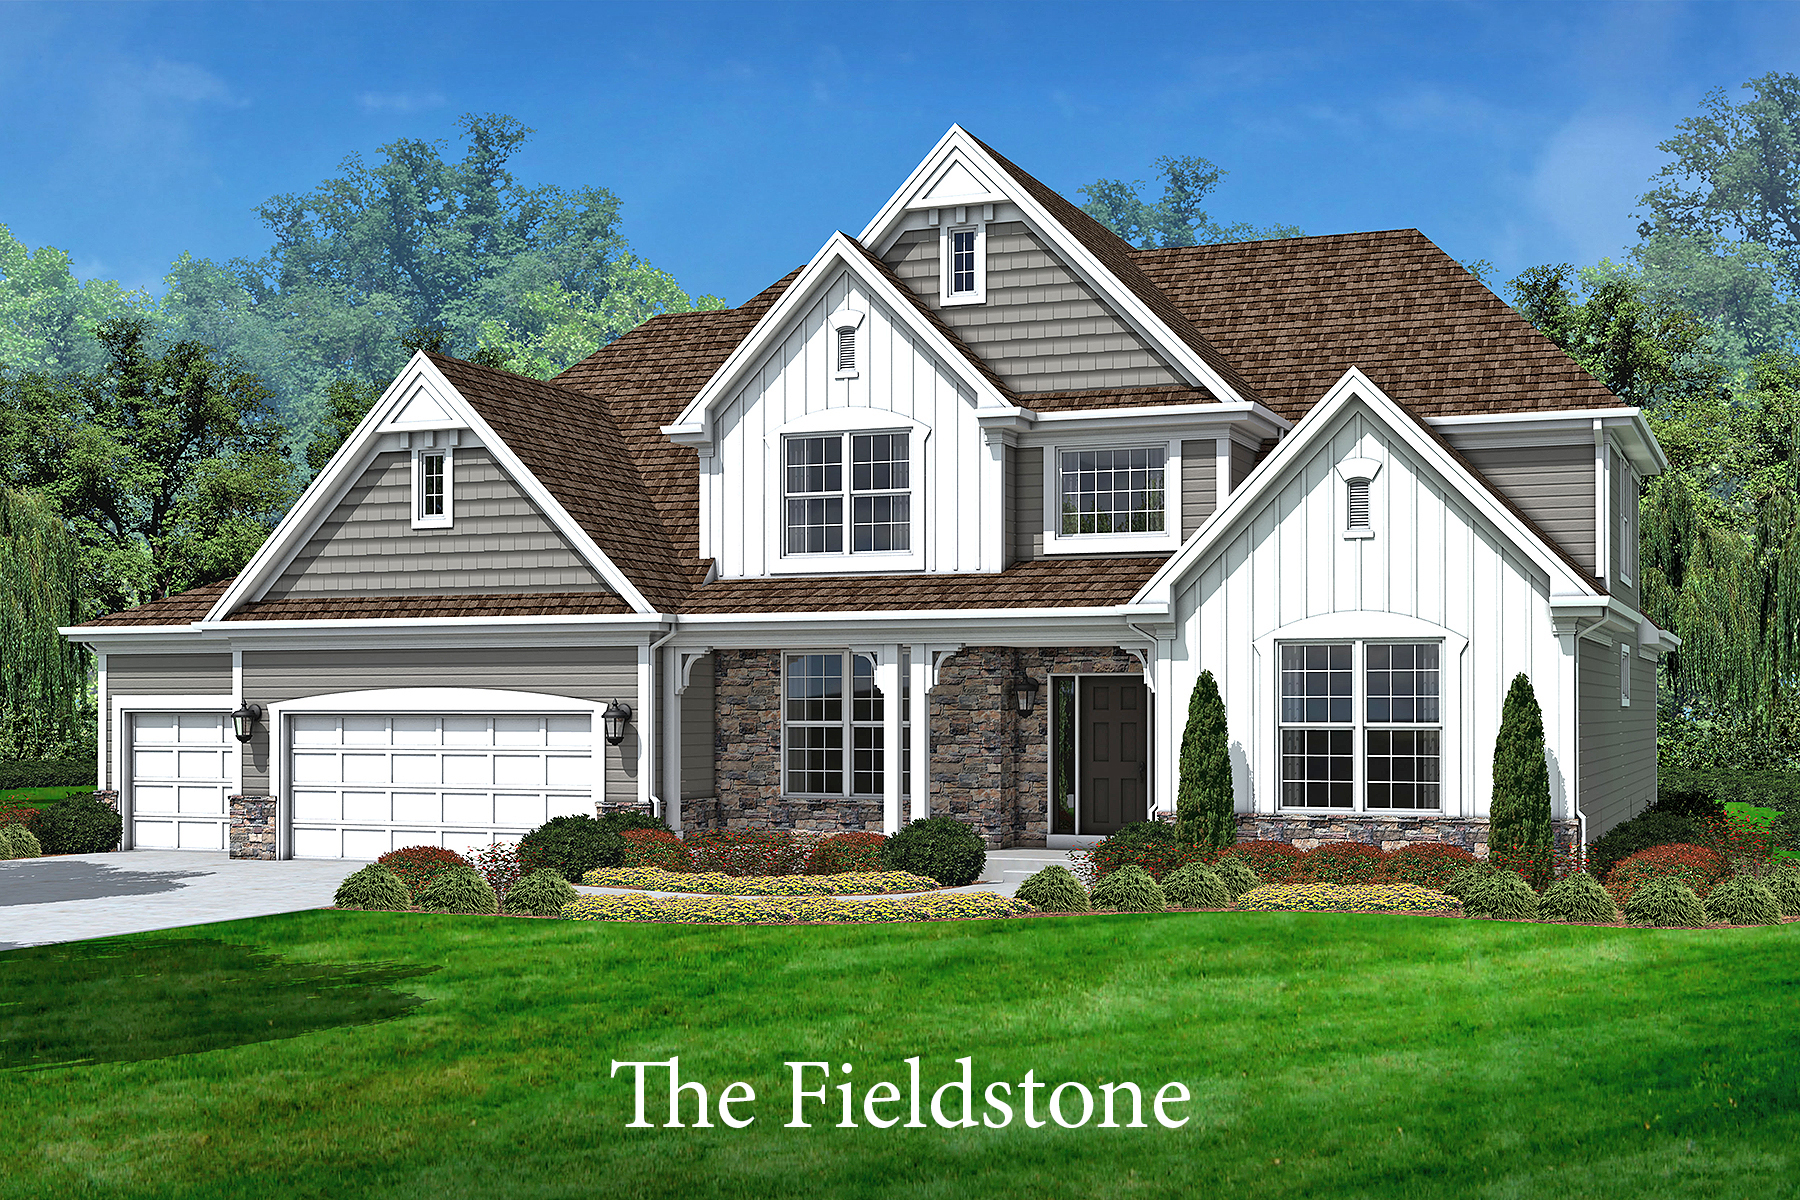 The Fieldstone